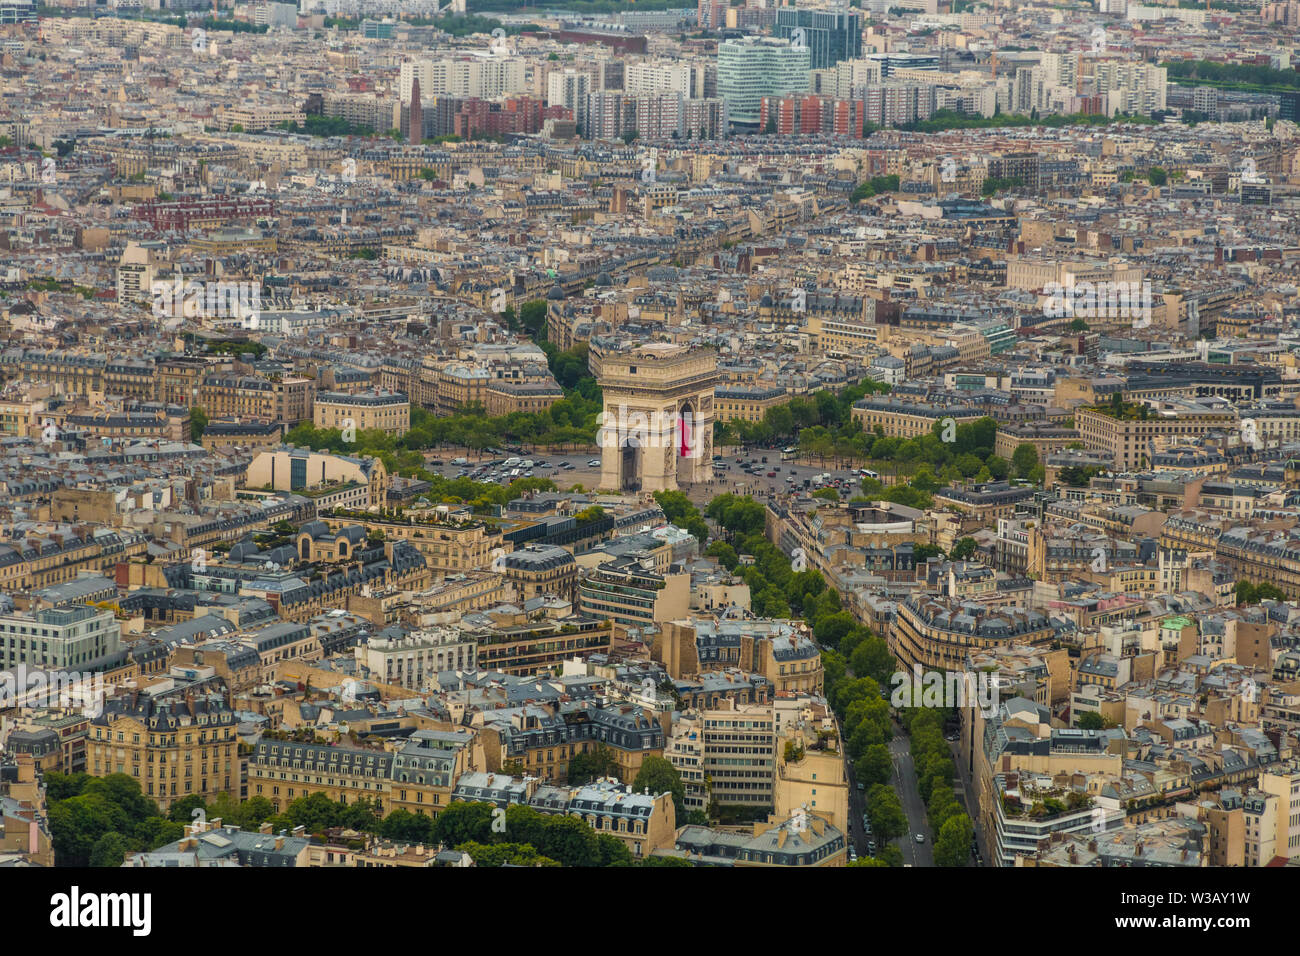 Belle vue aérienne de l'Arc de Triomphe de l'Étoile et de la ville de Paris. Les rues sont conduisant à un rond-point dont le monument est le... Banque D'Images